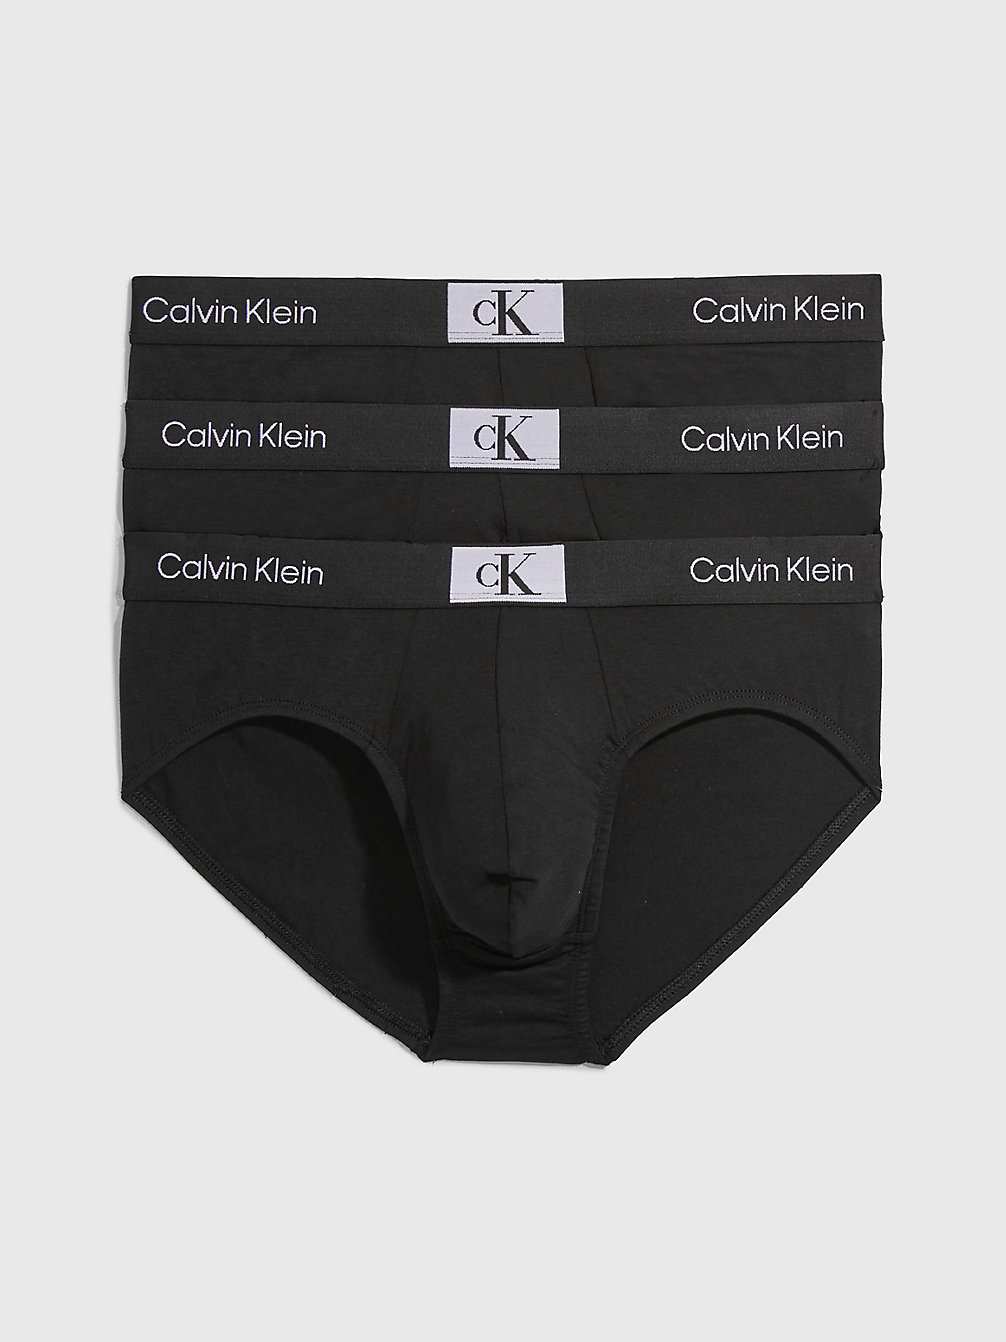 BLACK/BLACK/BLACK 3er-Pack Slips - Ck96 undefined Herren Calvin Klein